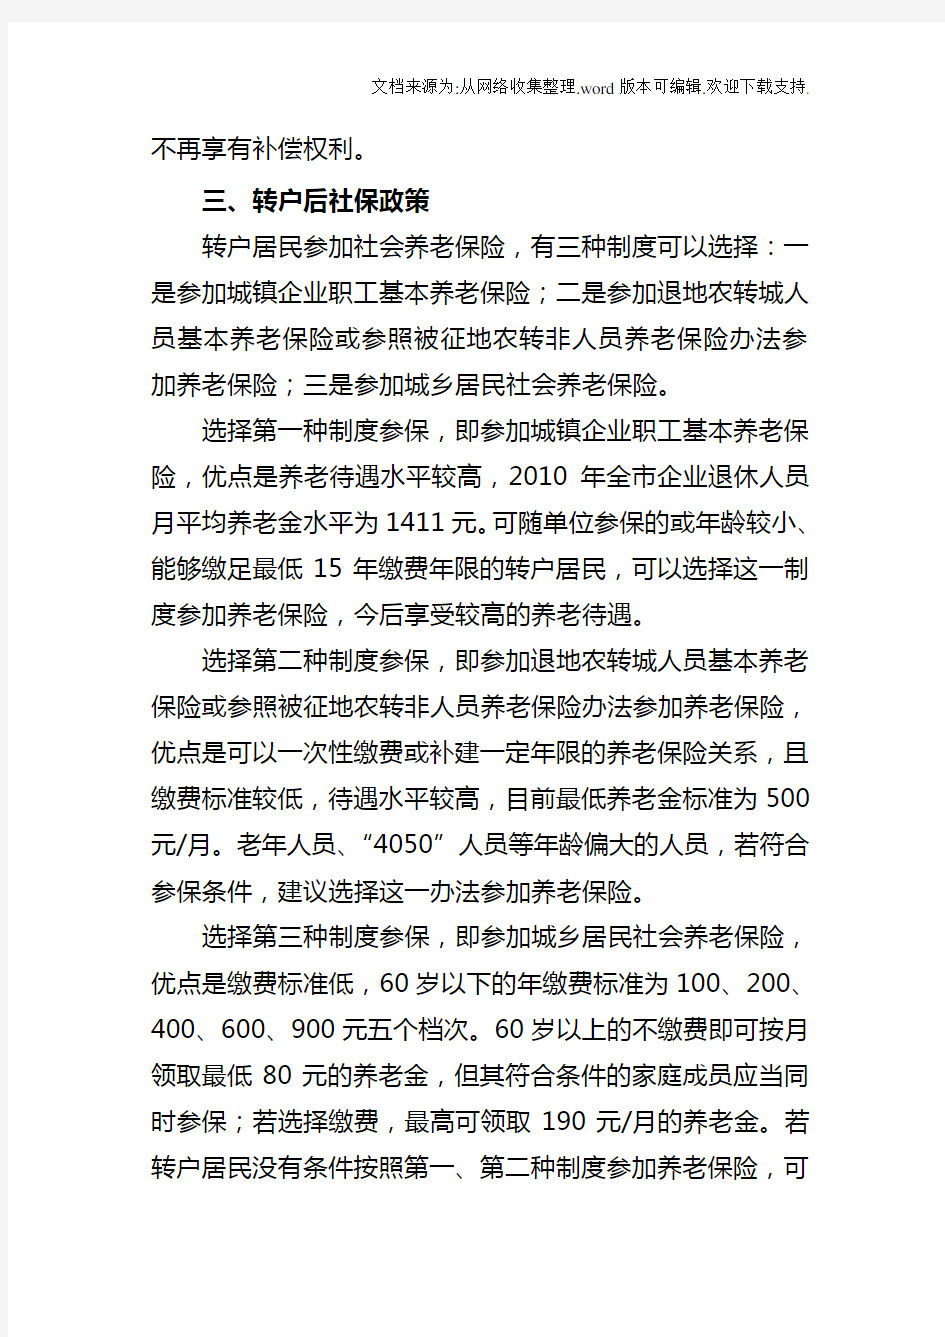 重庆市户籍制度改革有关政策解读